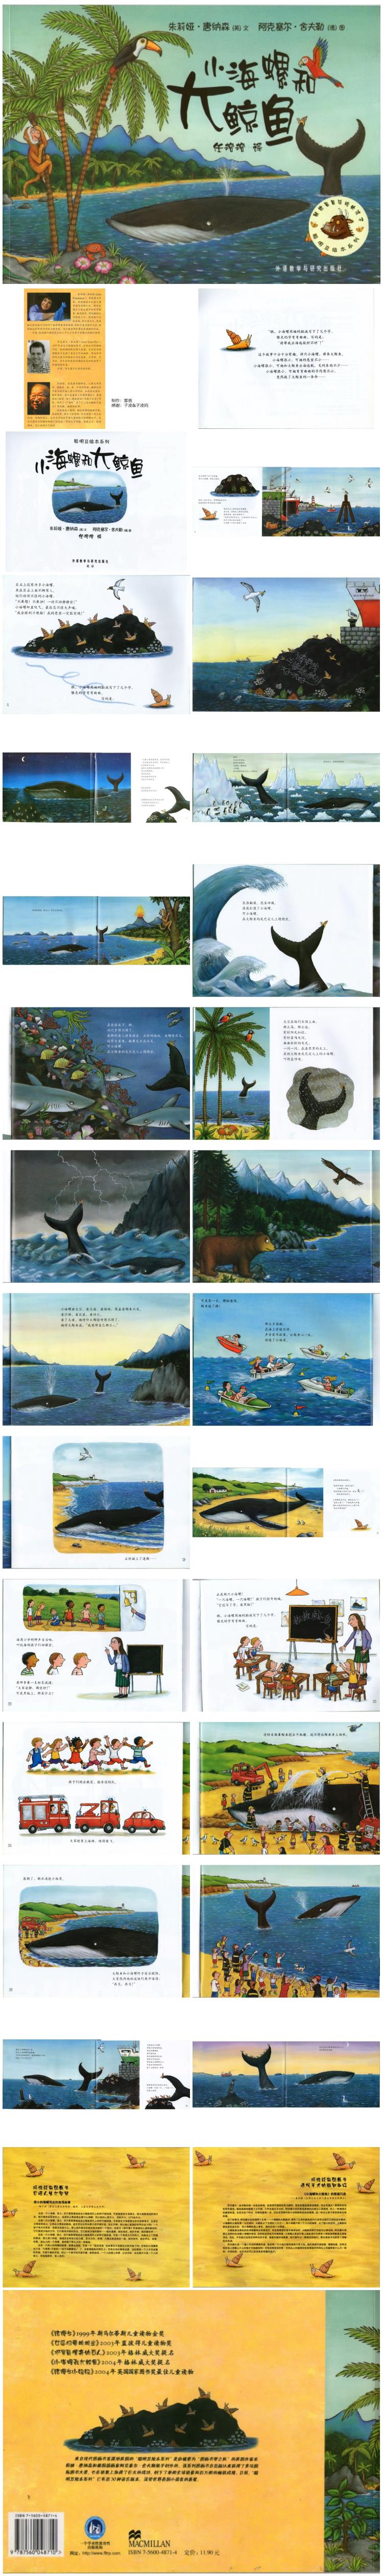 《小海螺和大鲸鱼》童话绘本儿童故事PPT